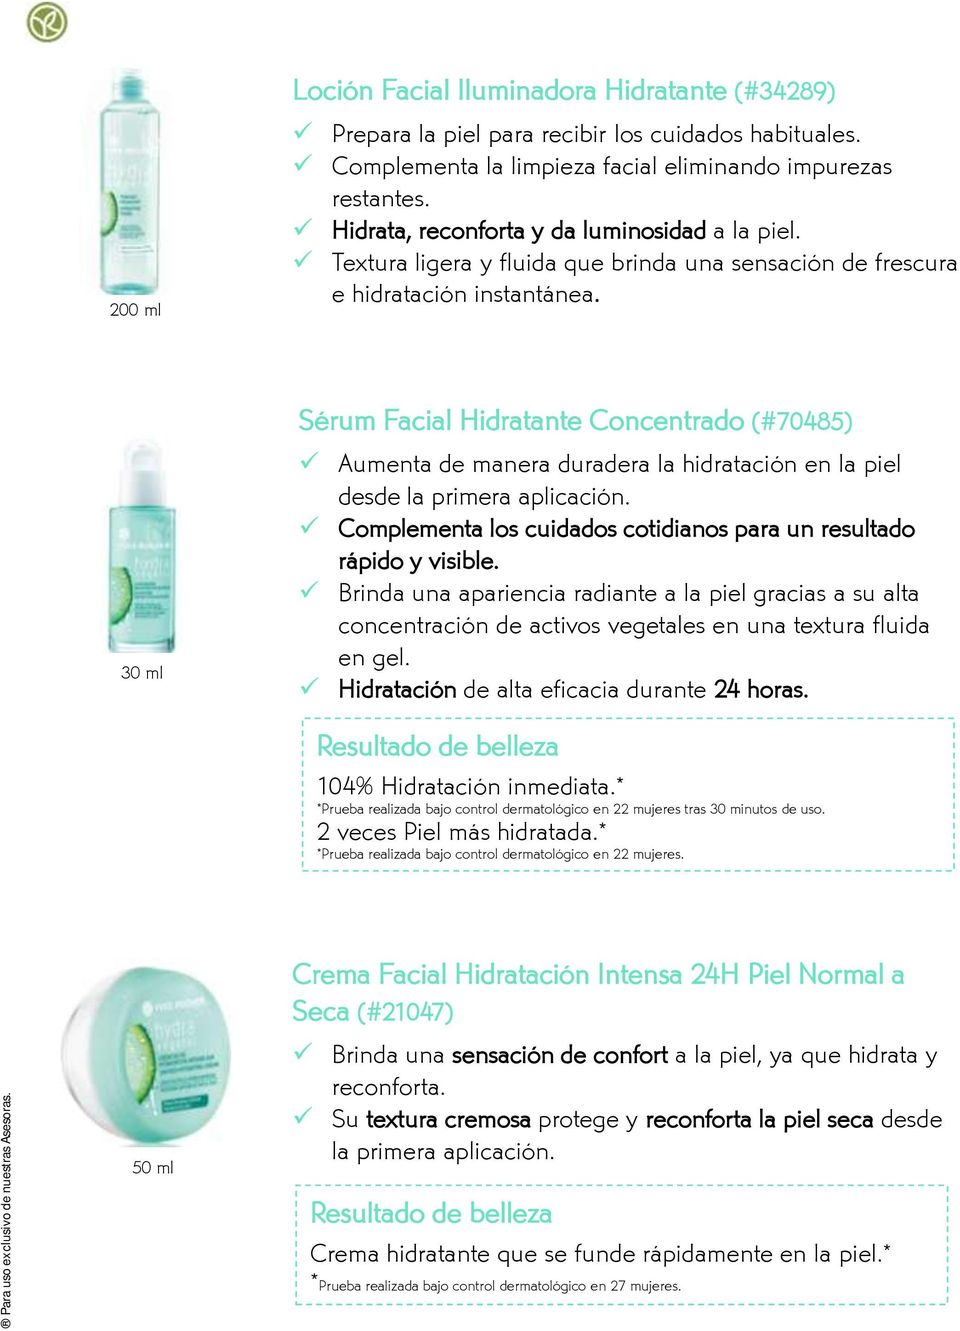 Sérum Facial Hidratante Concentrado (#70485) 30 ml Aumenta de manera duradera la hidratación en la piel desde la primera aplicación.